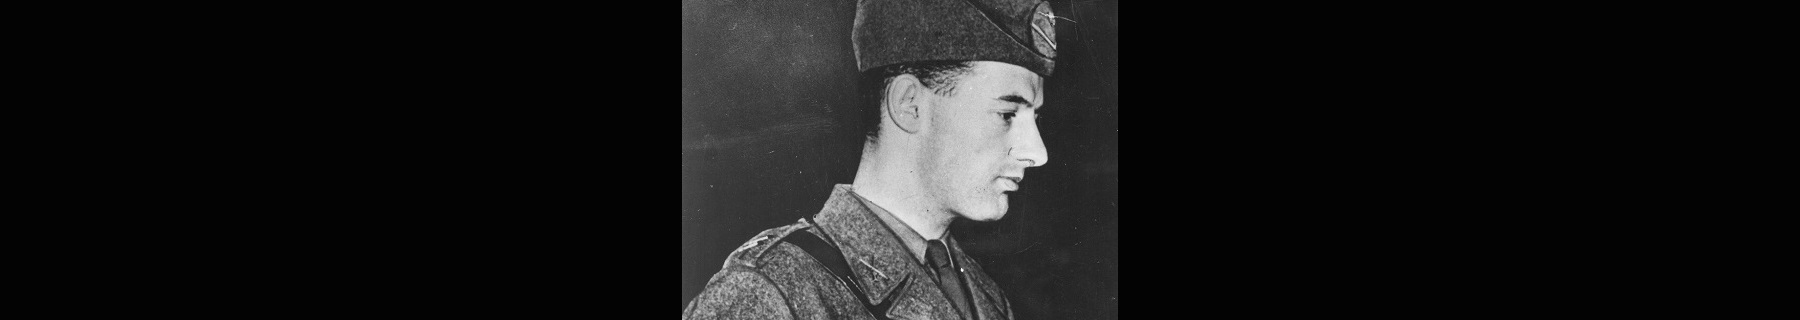 Ett svartvit foto av en man i profil, iklädd uniform.